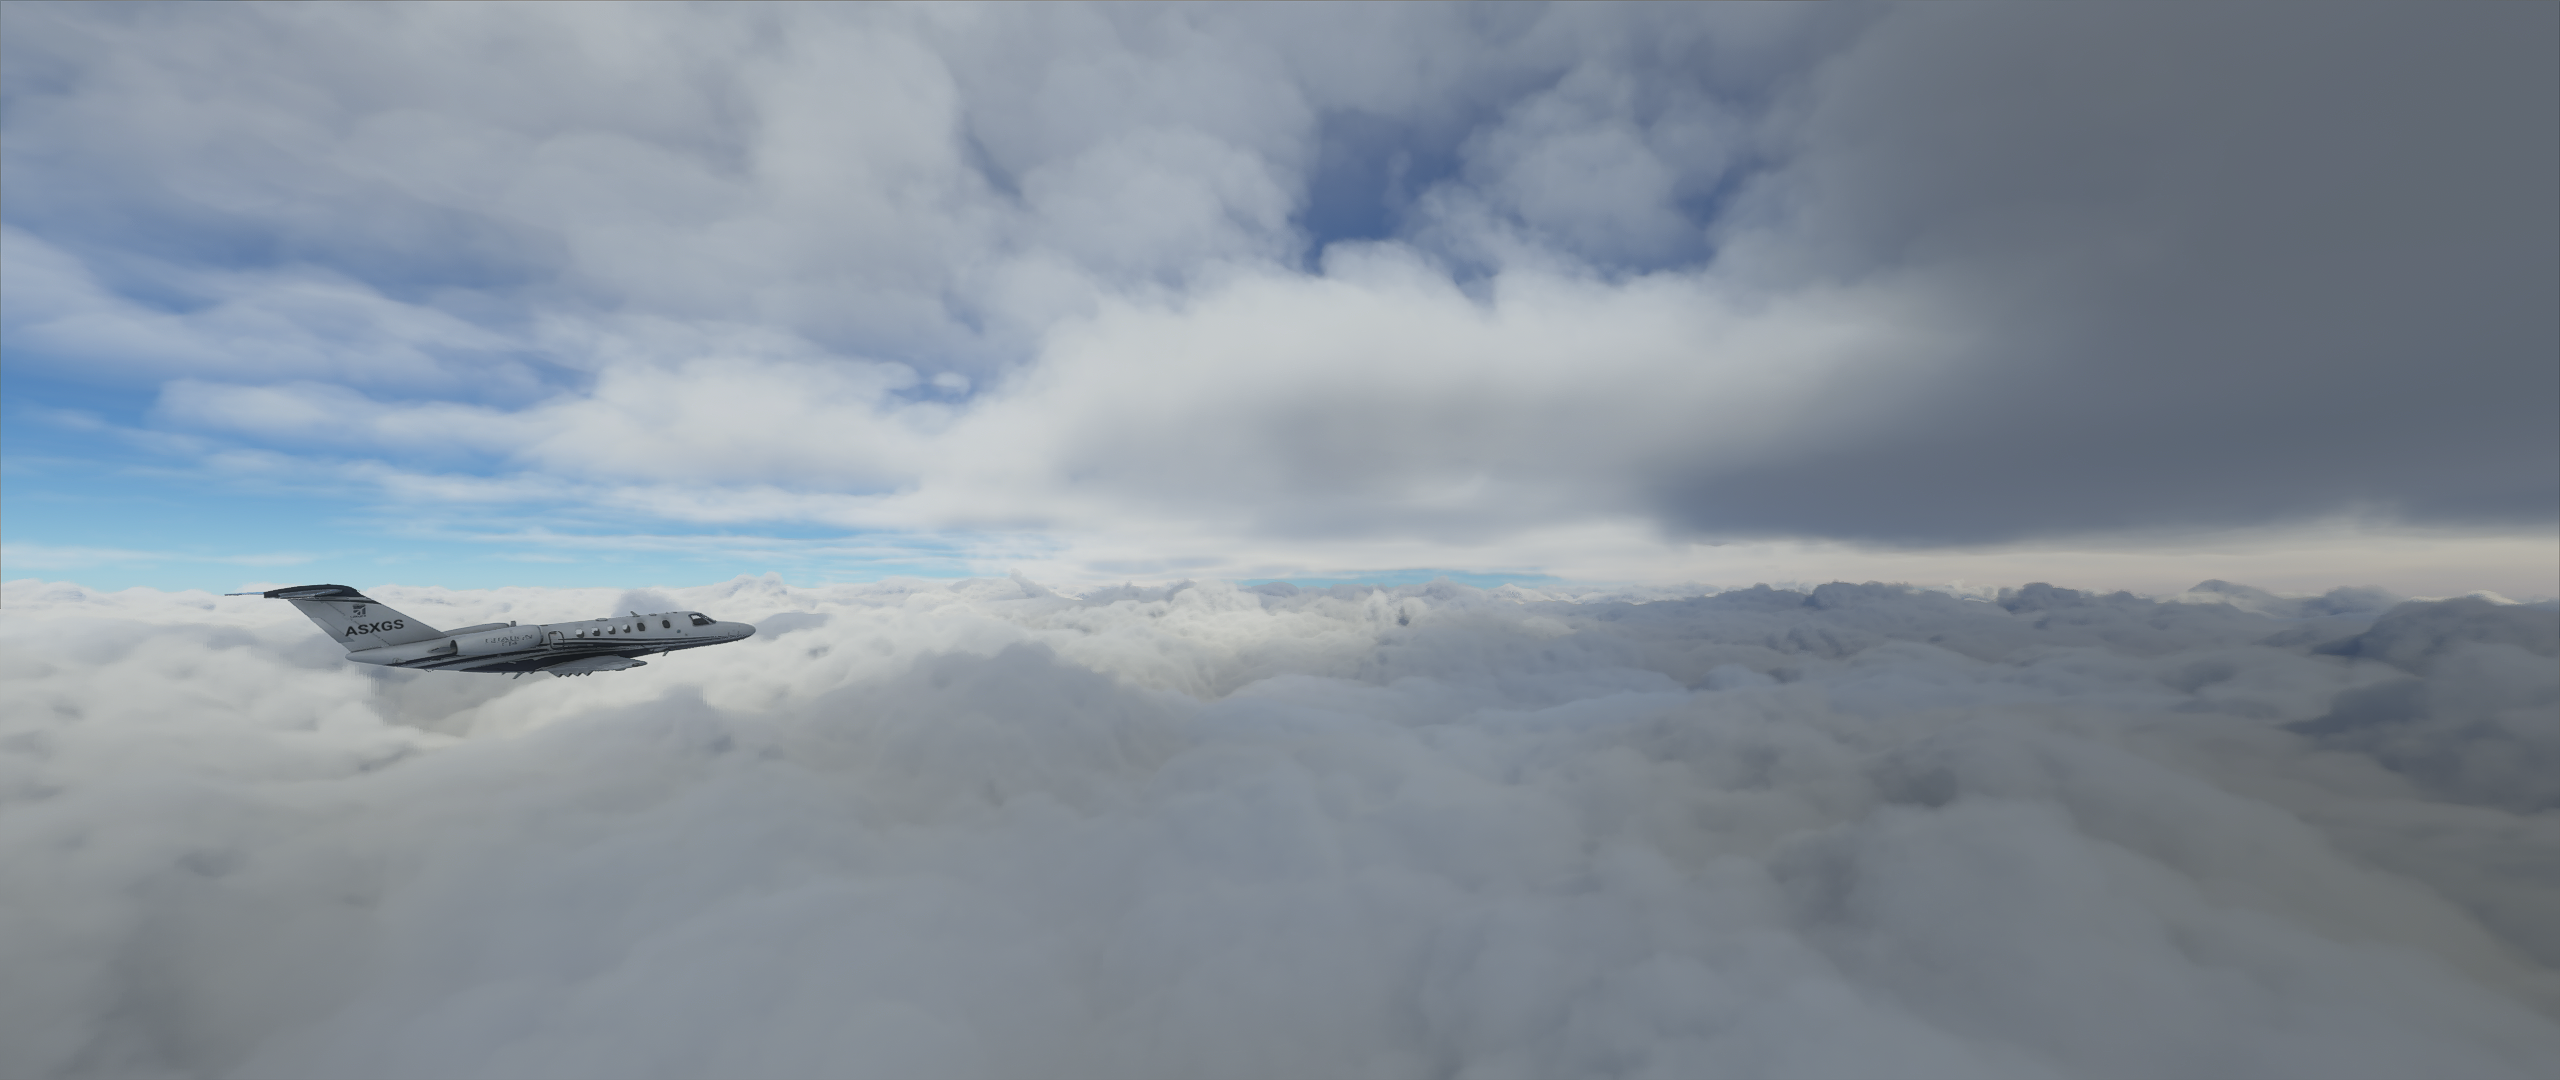 Cessna Microsoft Flight Simulator 2020 Clouds Video Game Art Ultrawide 2560x1080